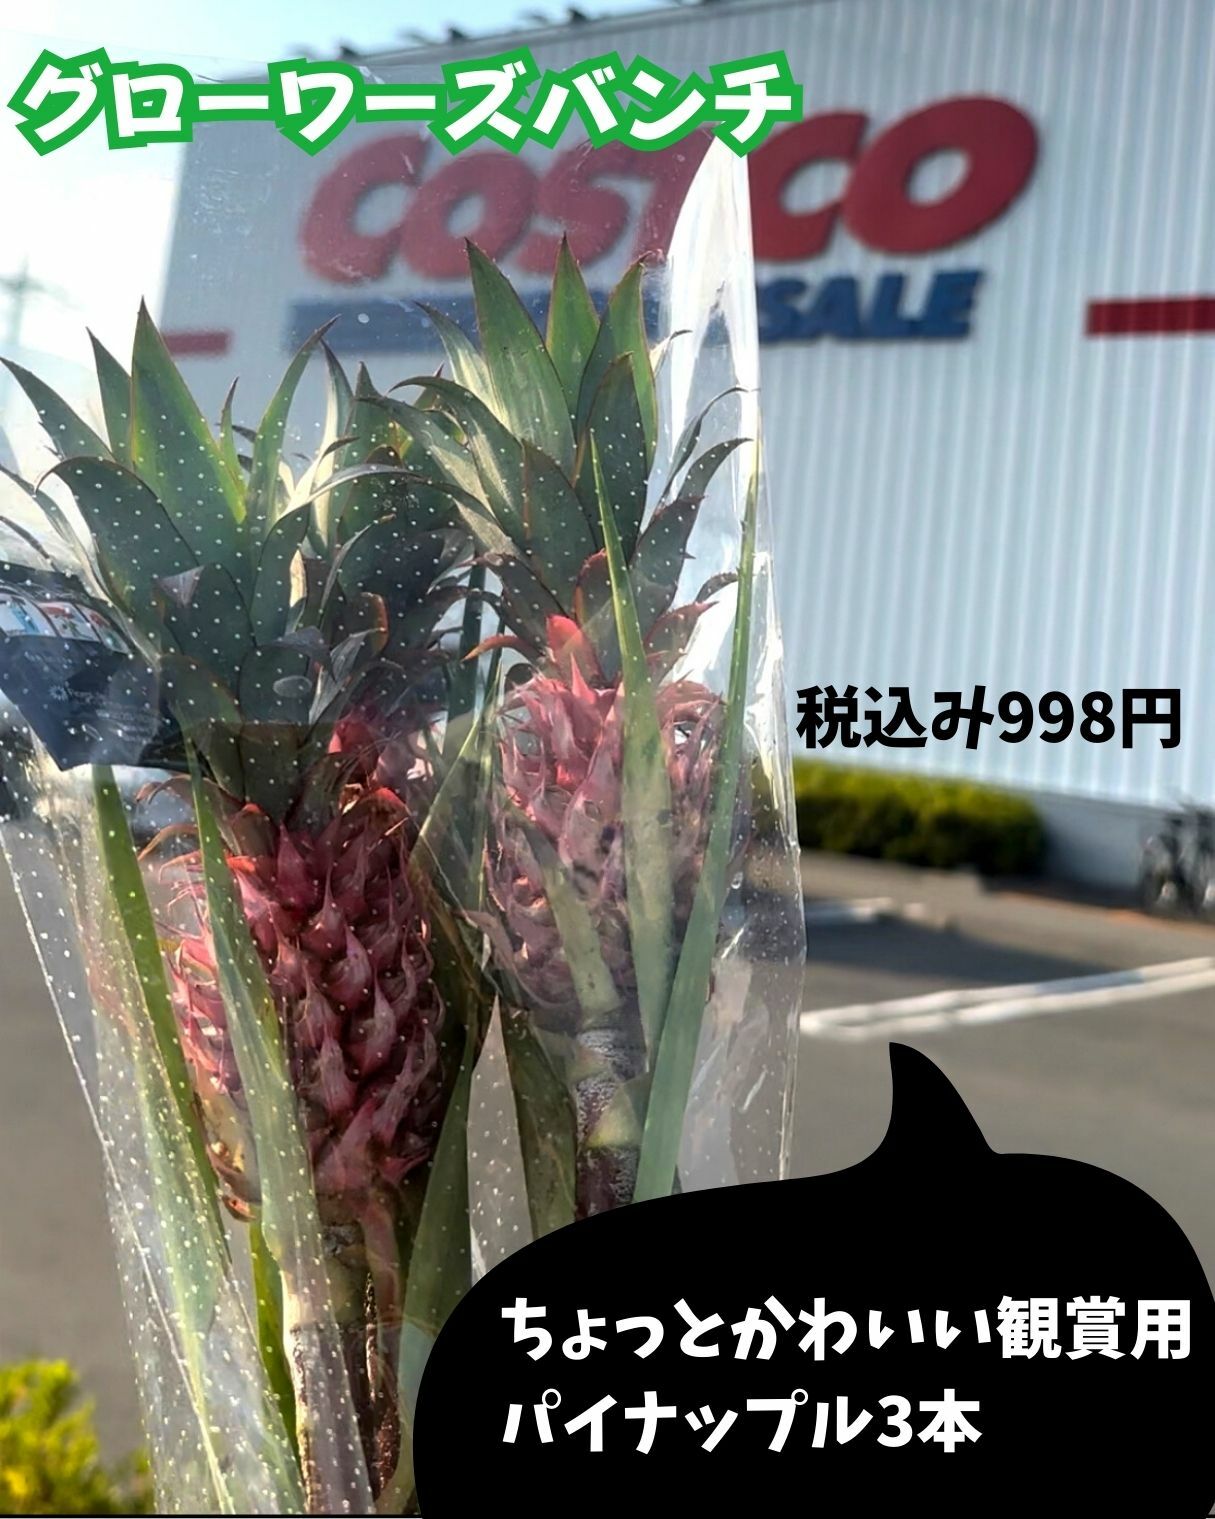 【コストコ】季節の切り花コーナーで観賞用ミニパイナップルを購入